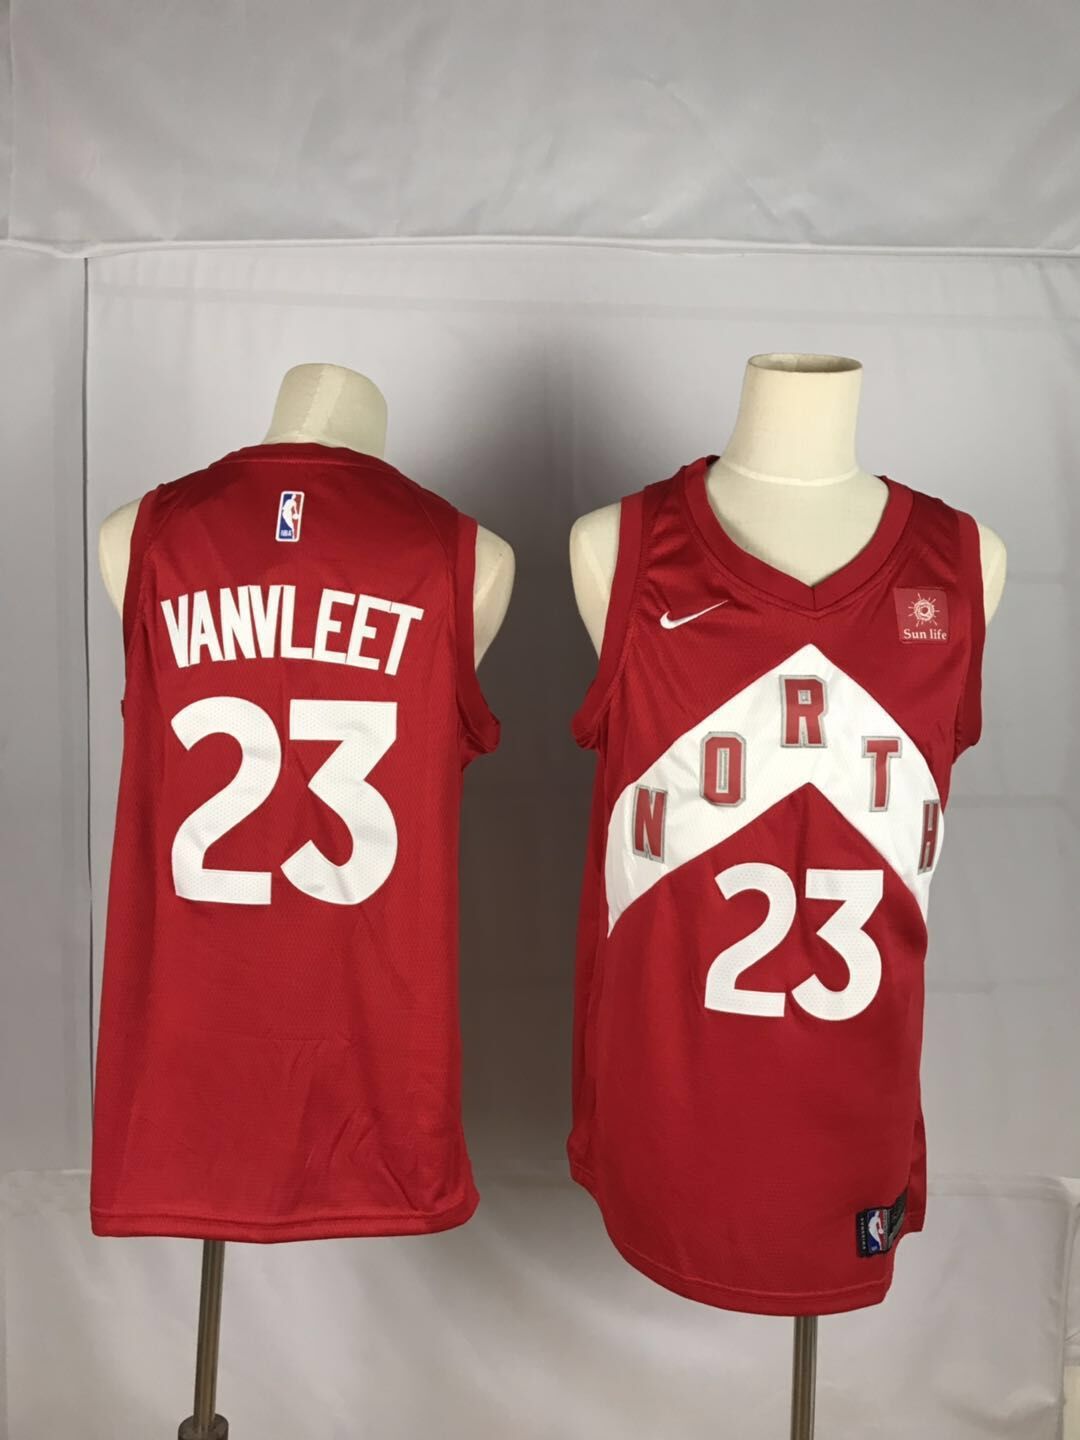 2019 Men Toronto Raptors #23 Vanvleet red NBA Nike Jerseys